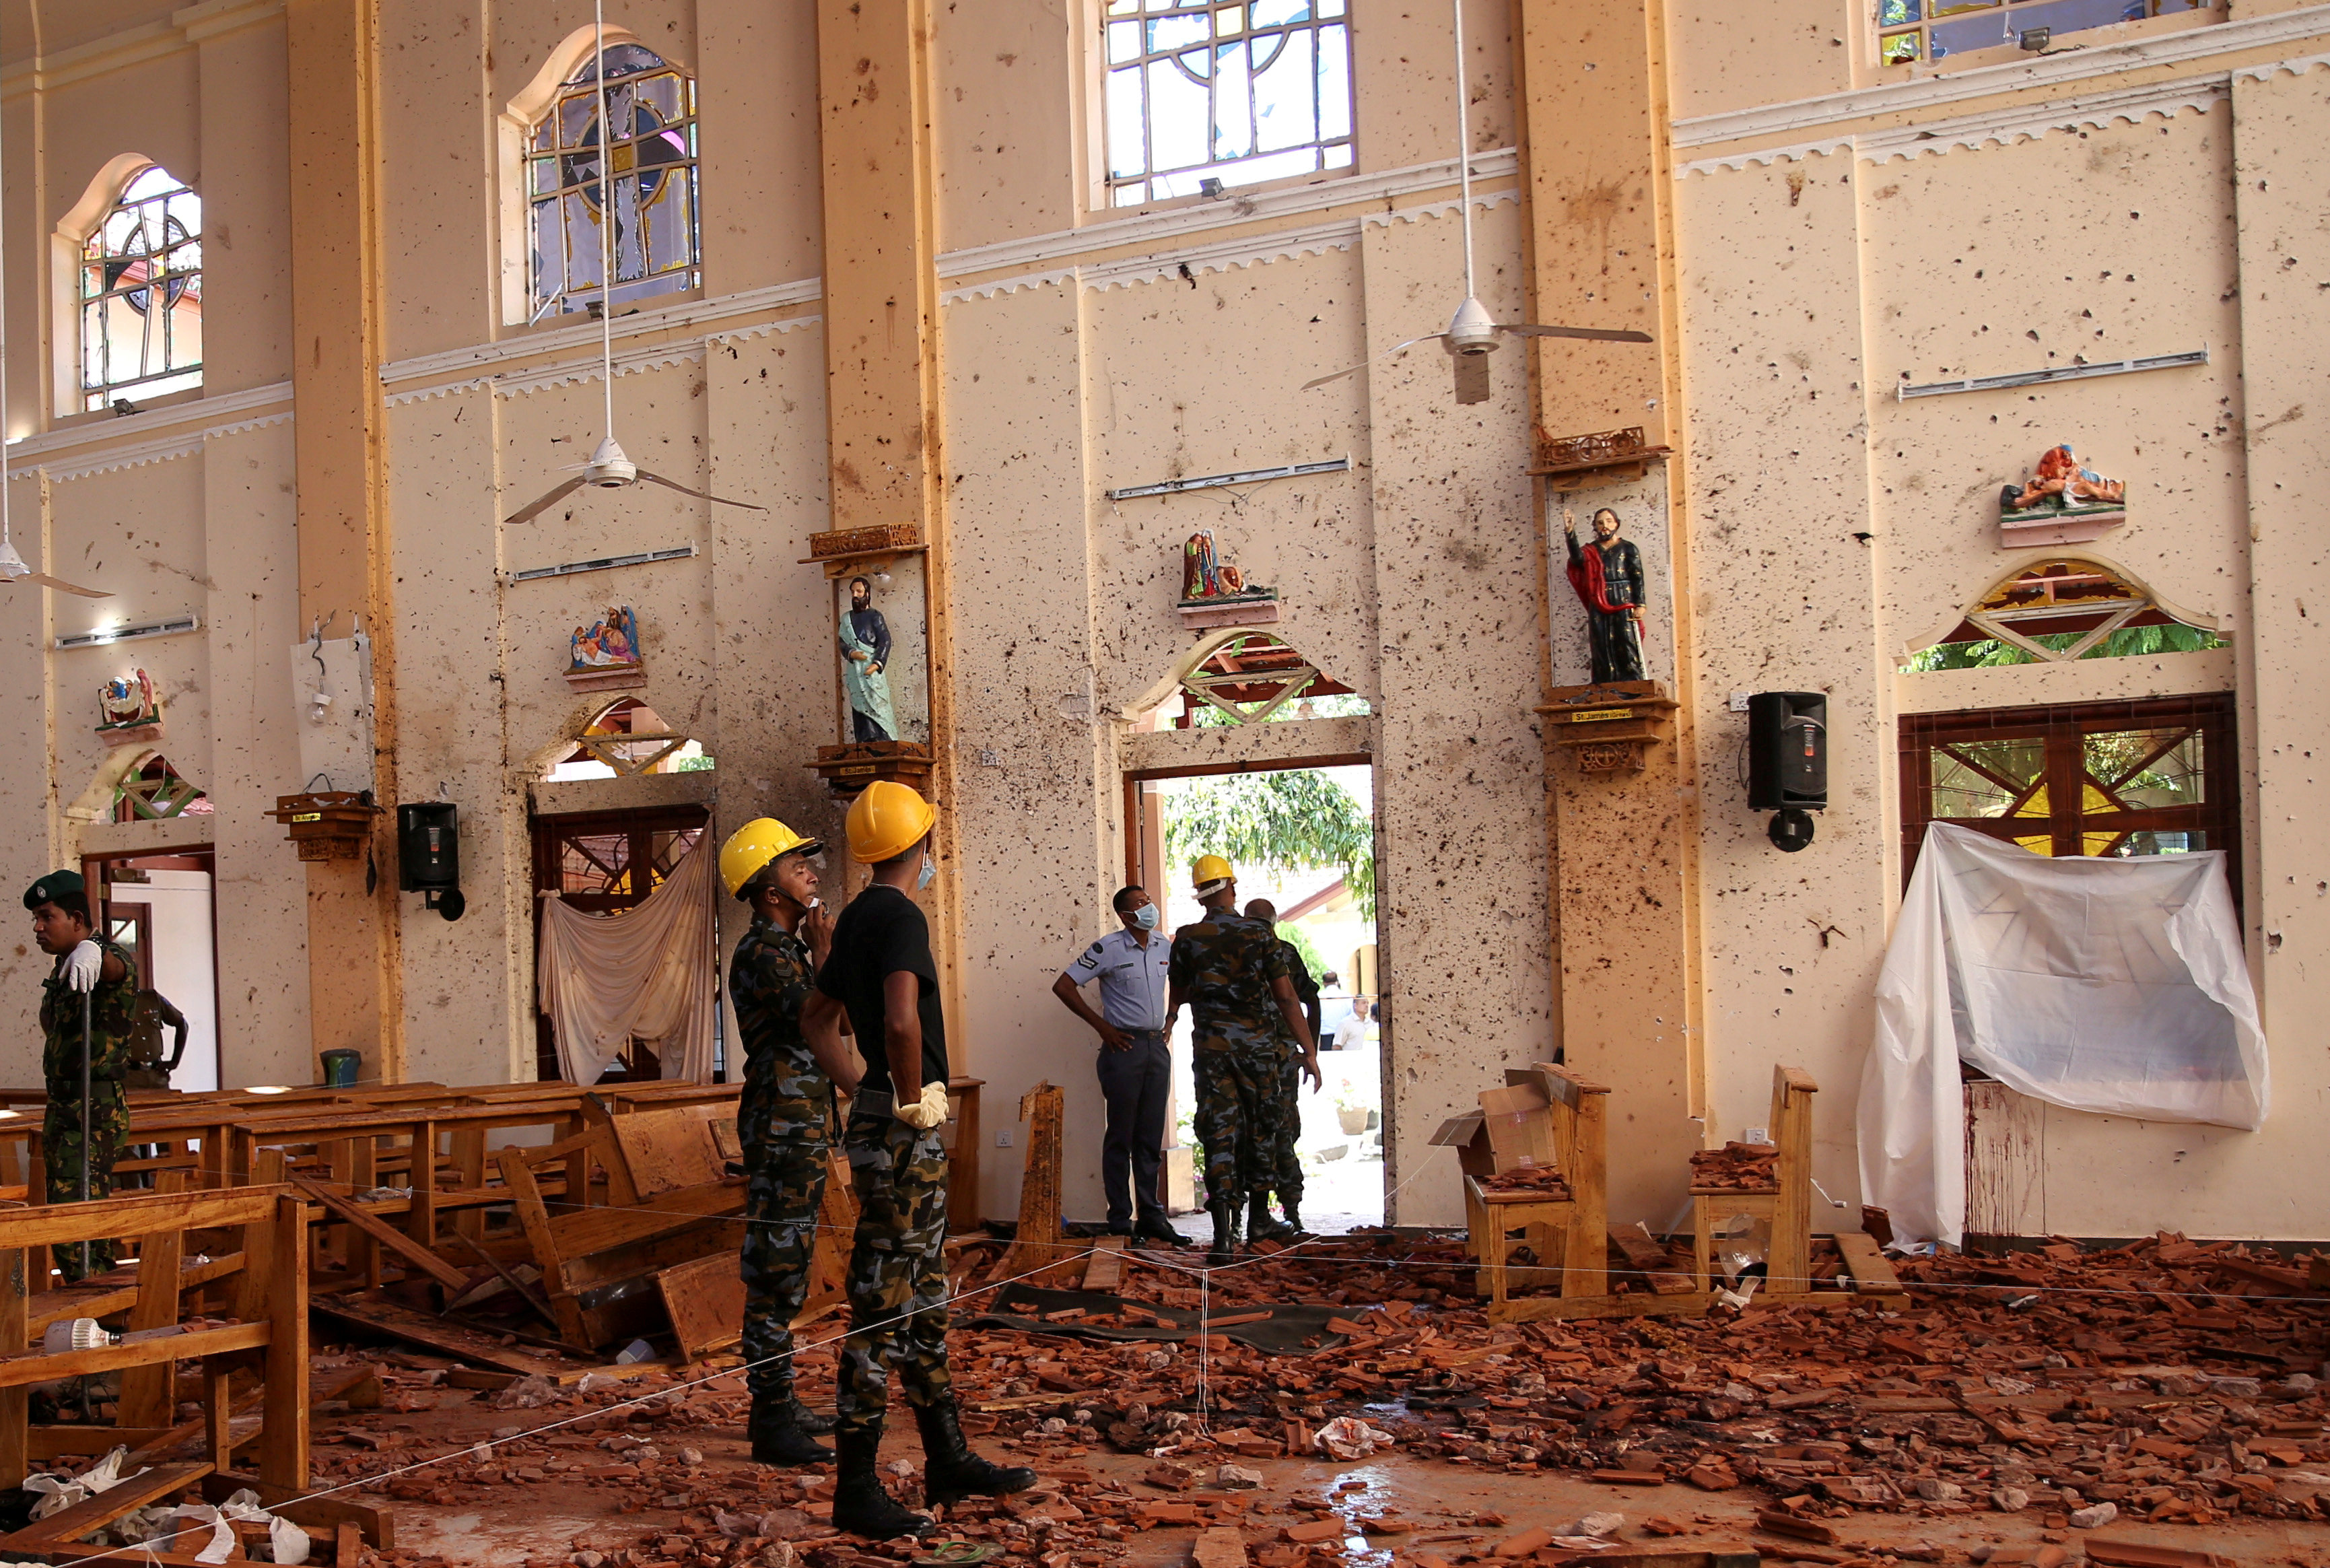 El Papa condena atentados en Sri Lanka como actos terroristas injustificados